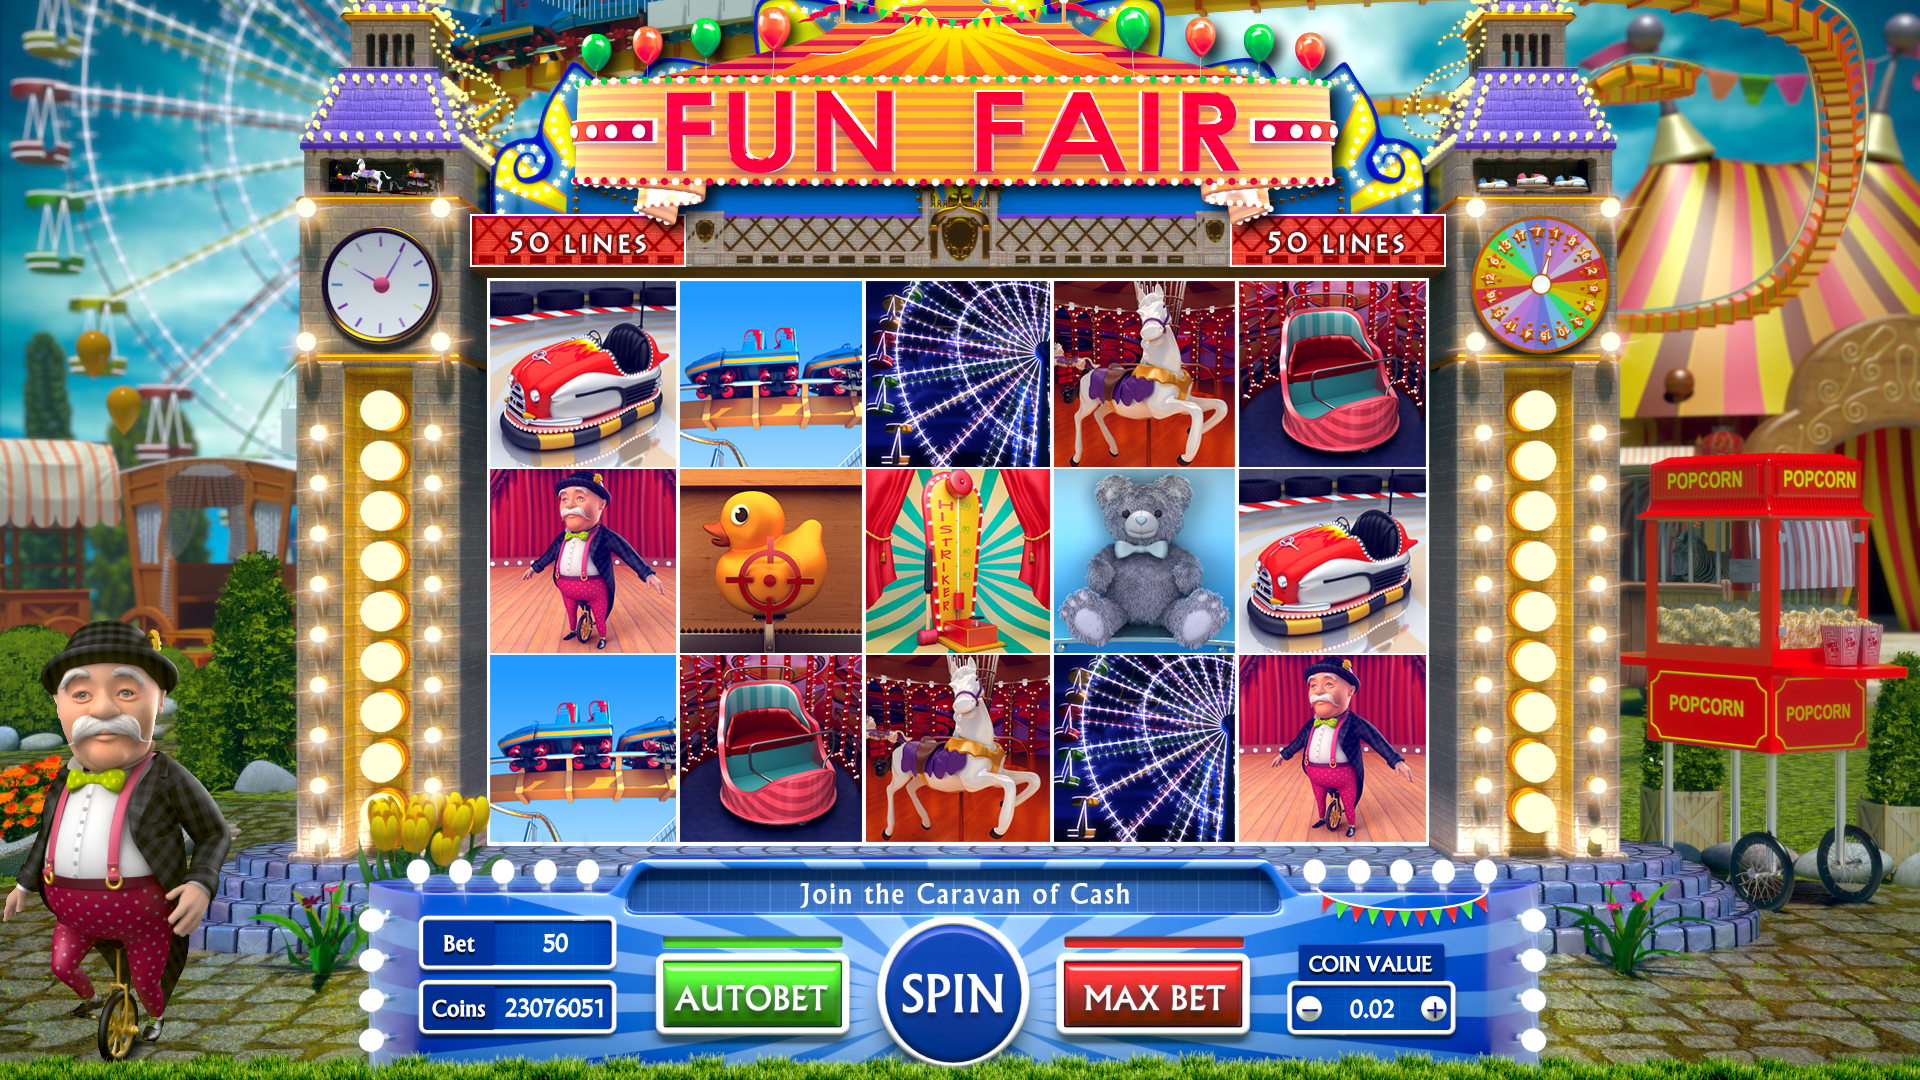 Слот машина game slot machines org ru. Fun Fair bas игровой автомат. Fun Fair Bash игровой аппарат. Слоты Интерфейс. Slot sales.